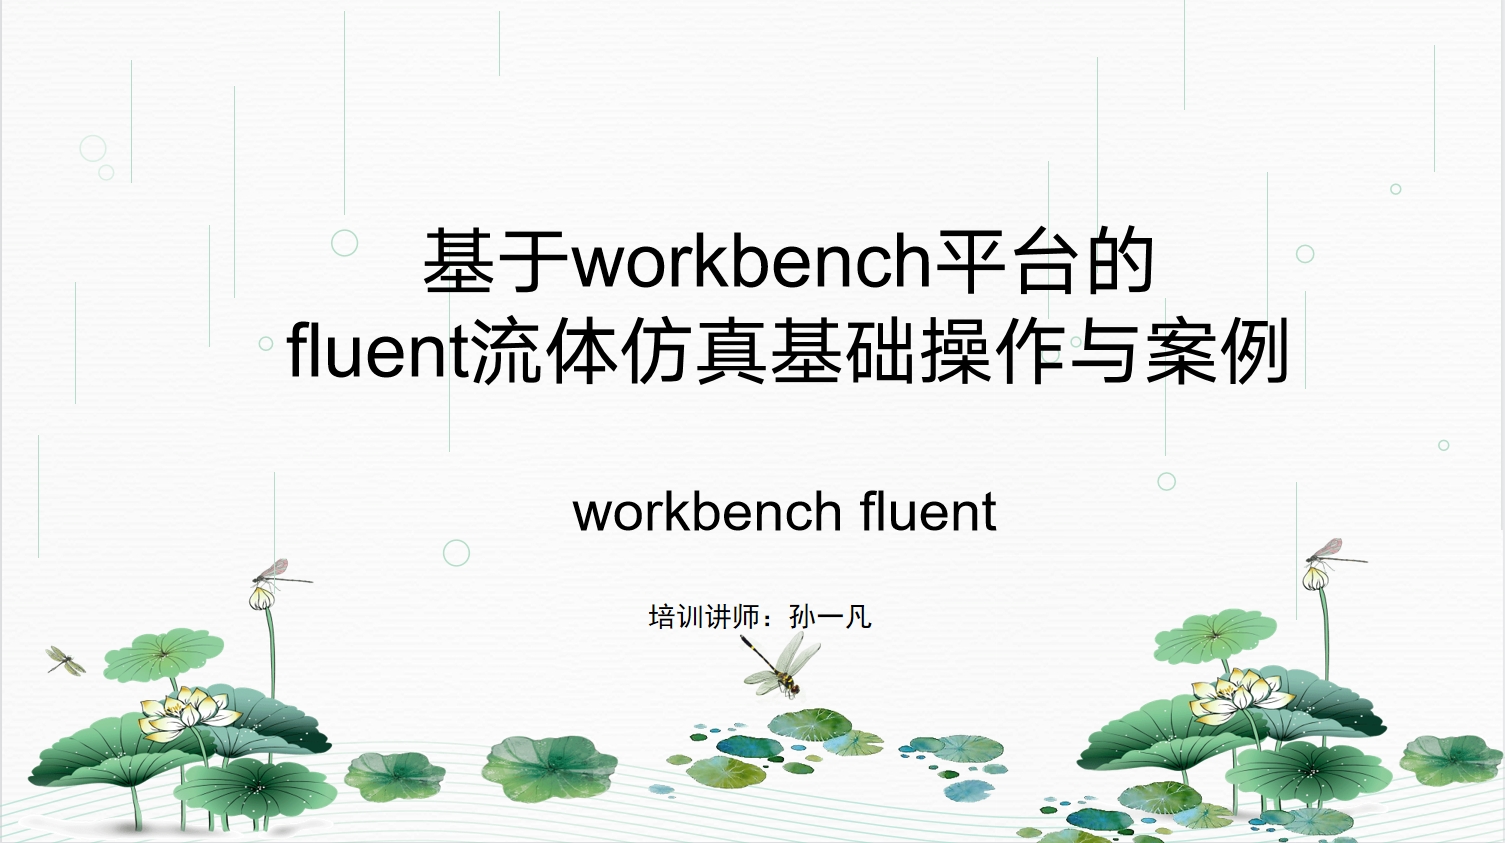 基于workbench平台的fluent流体仿真基础操作与案例